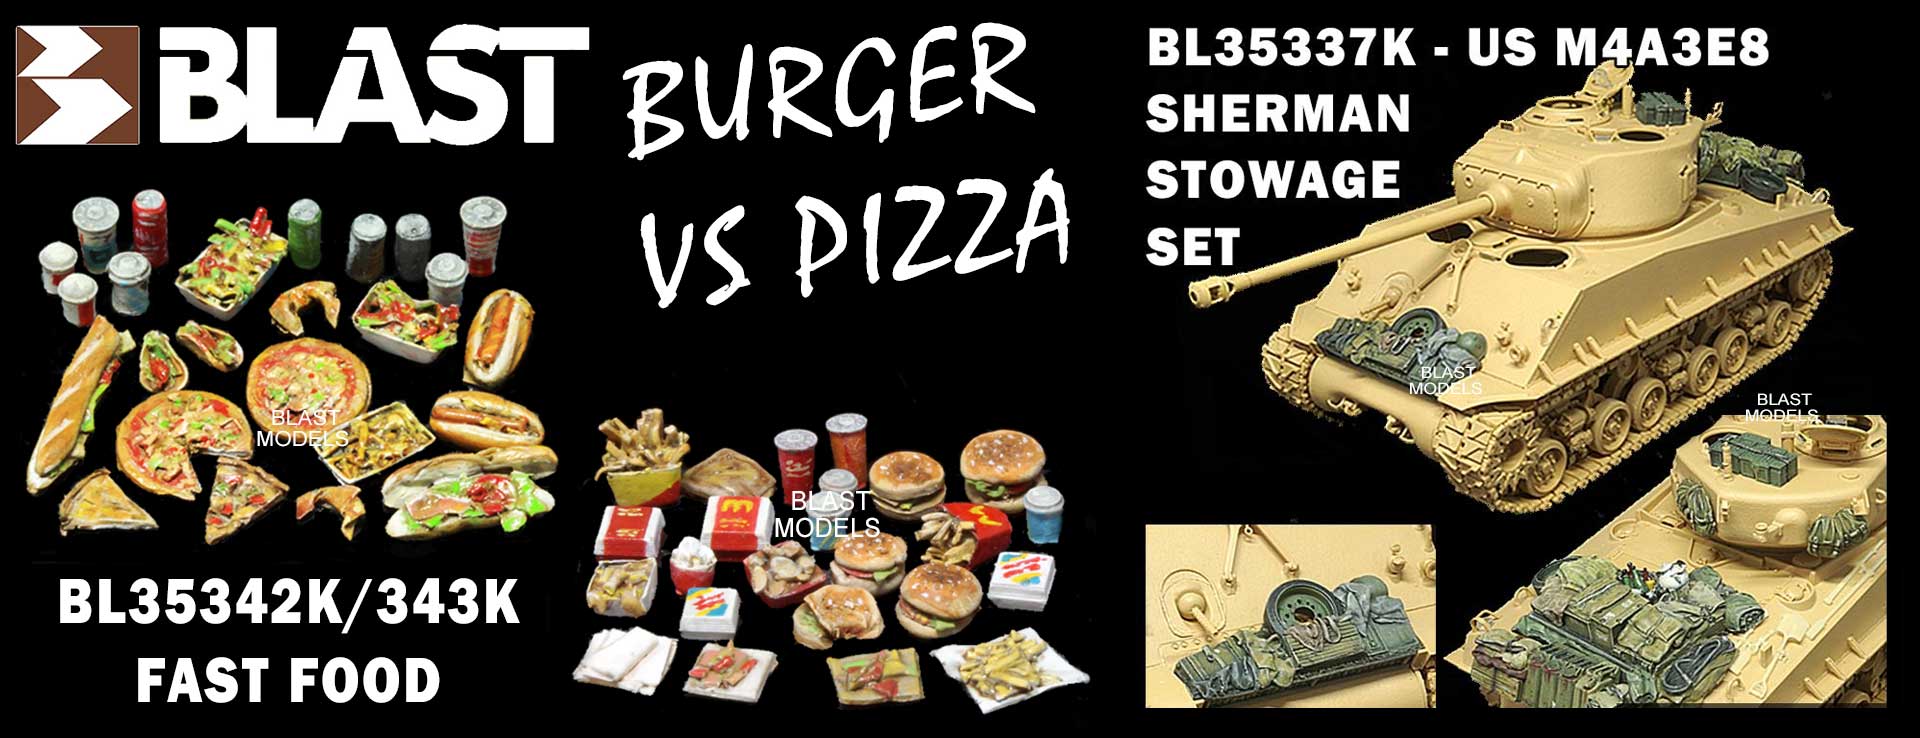 BL35342K BL35344K FAST FOOD BURGER  PIZZA BL35337KUS M4A3E8